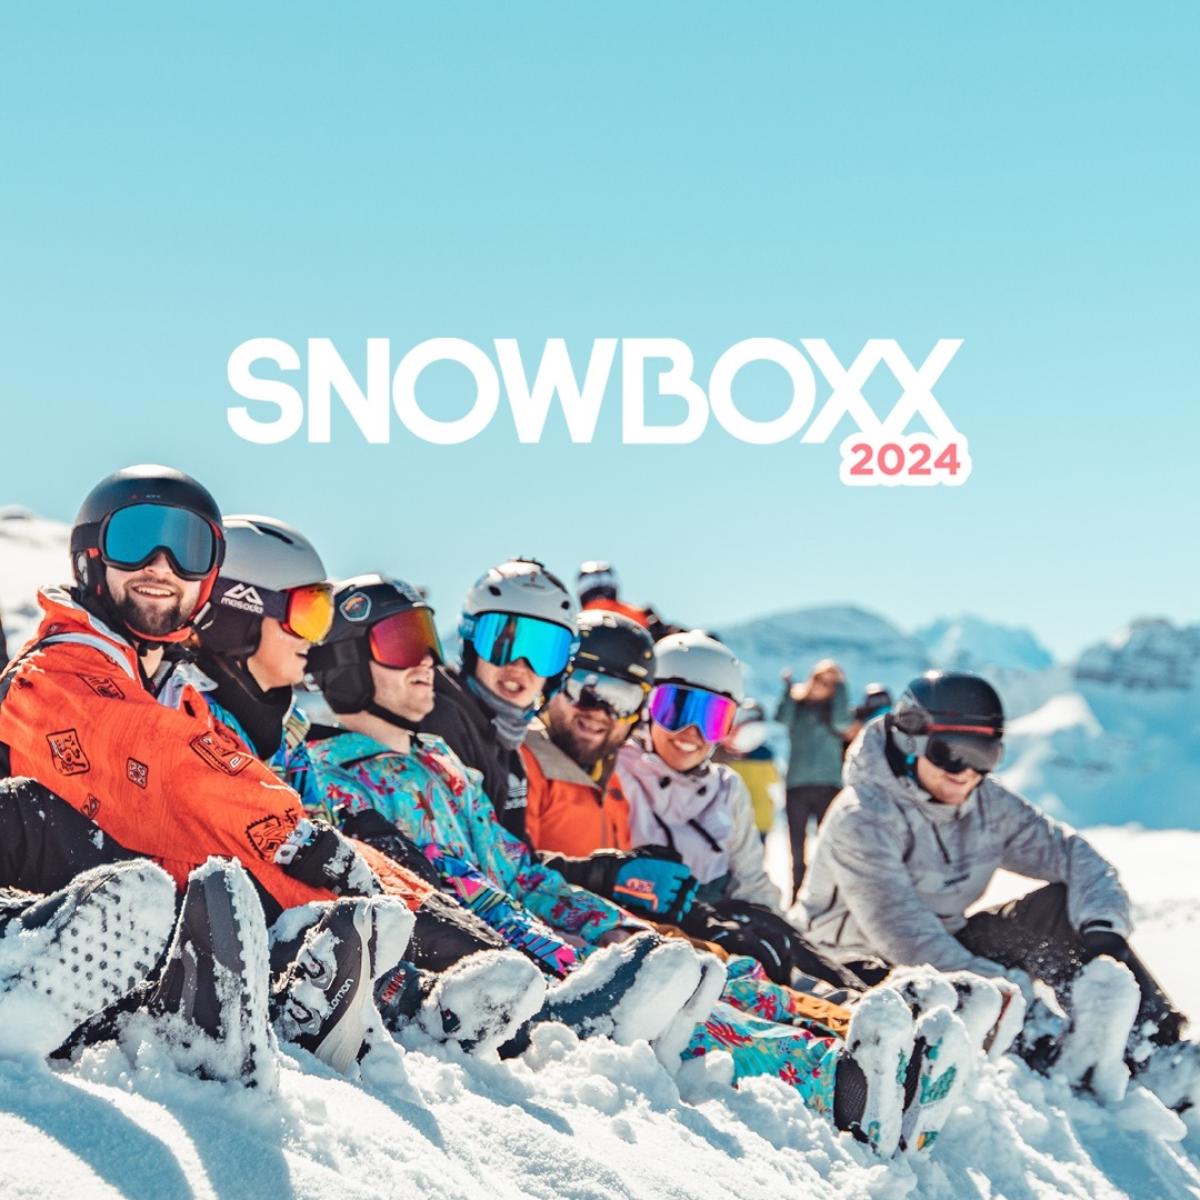 Snowboxx